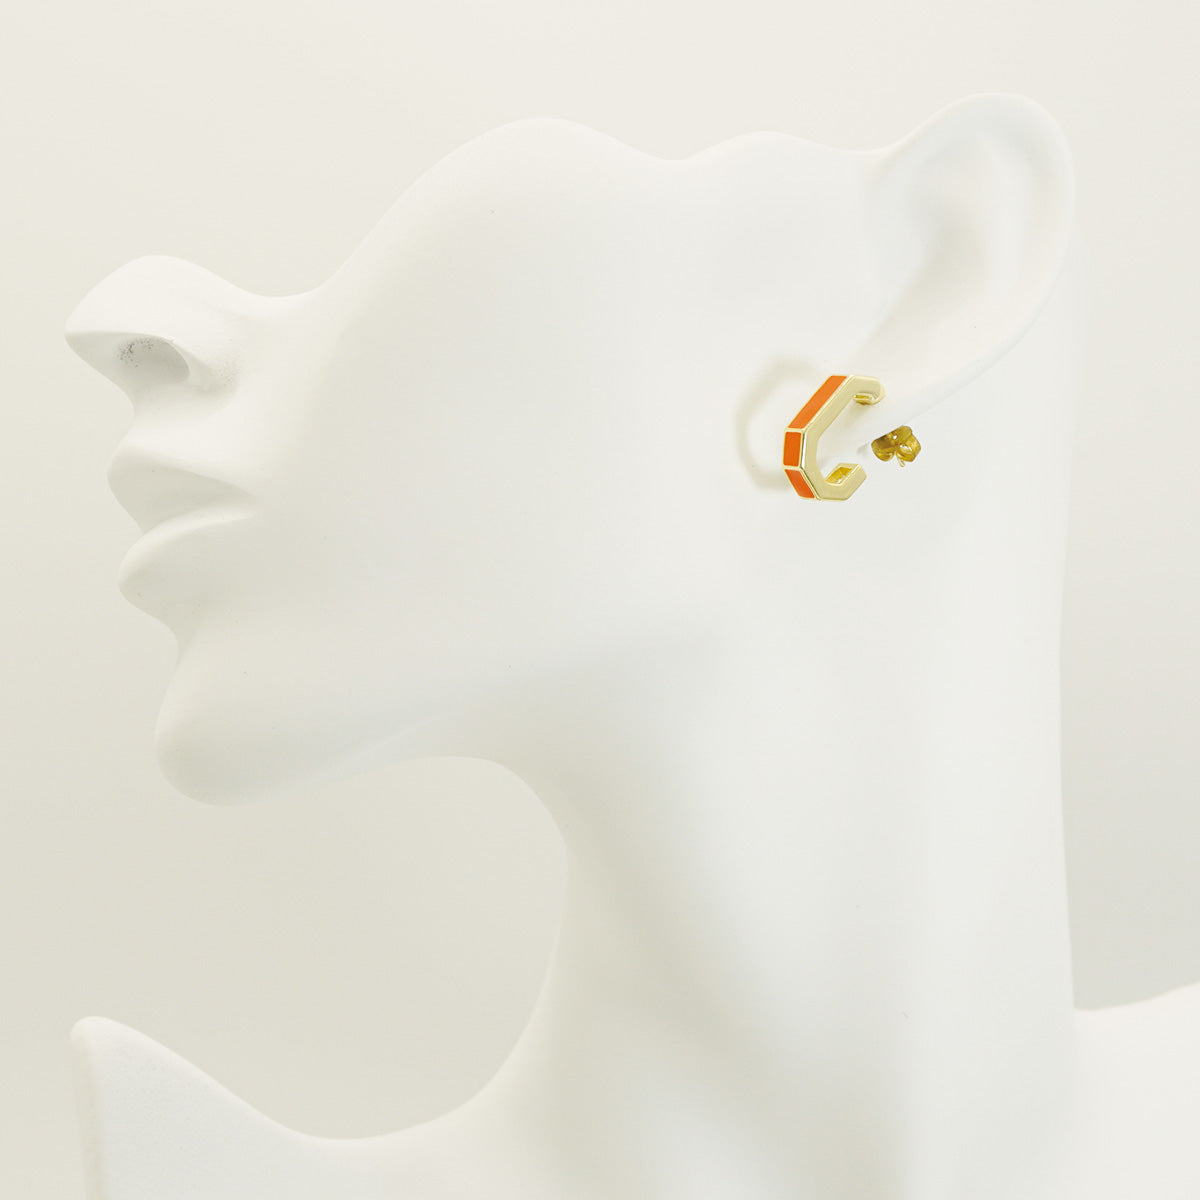 Orange J Letter Style Gold Stud Earrings for Women